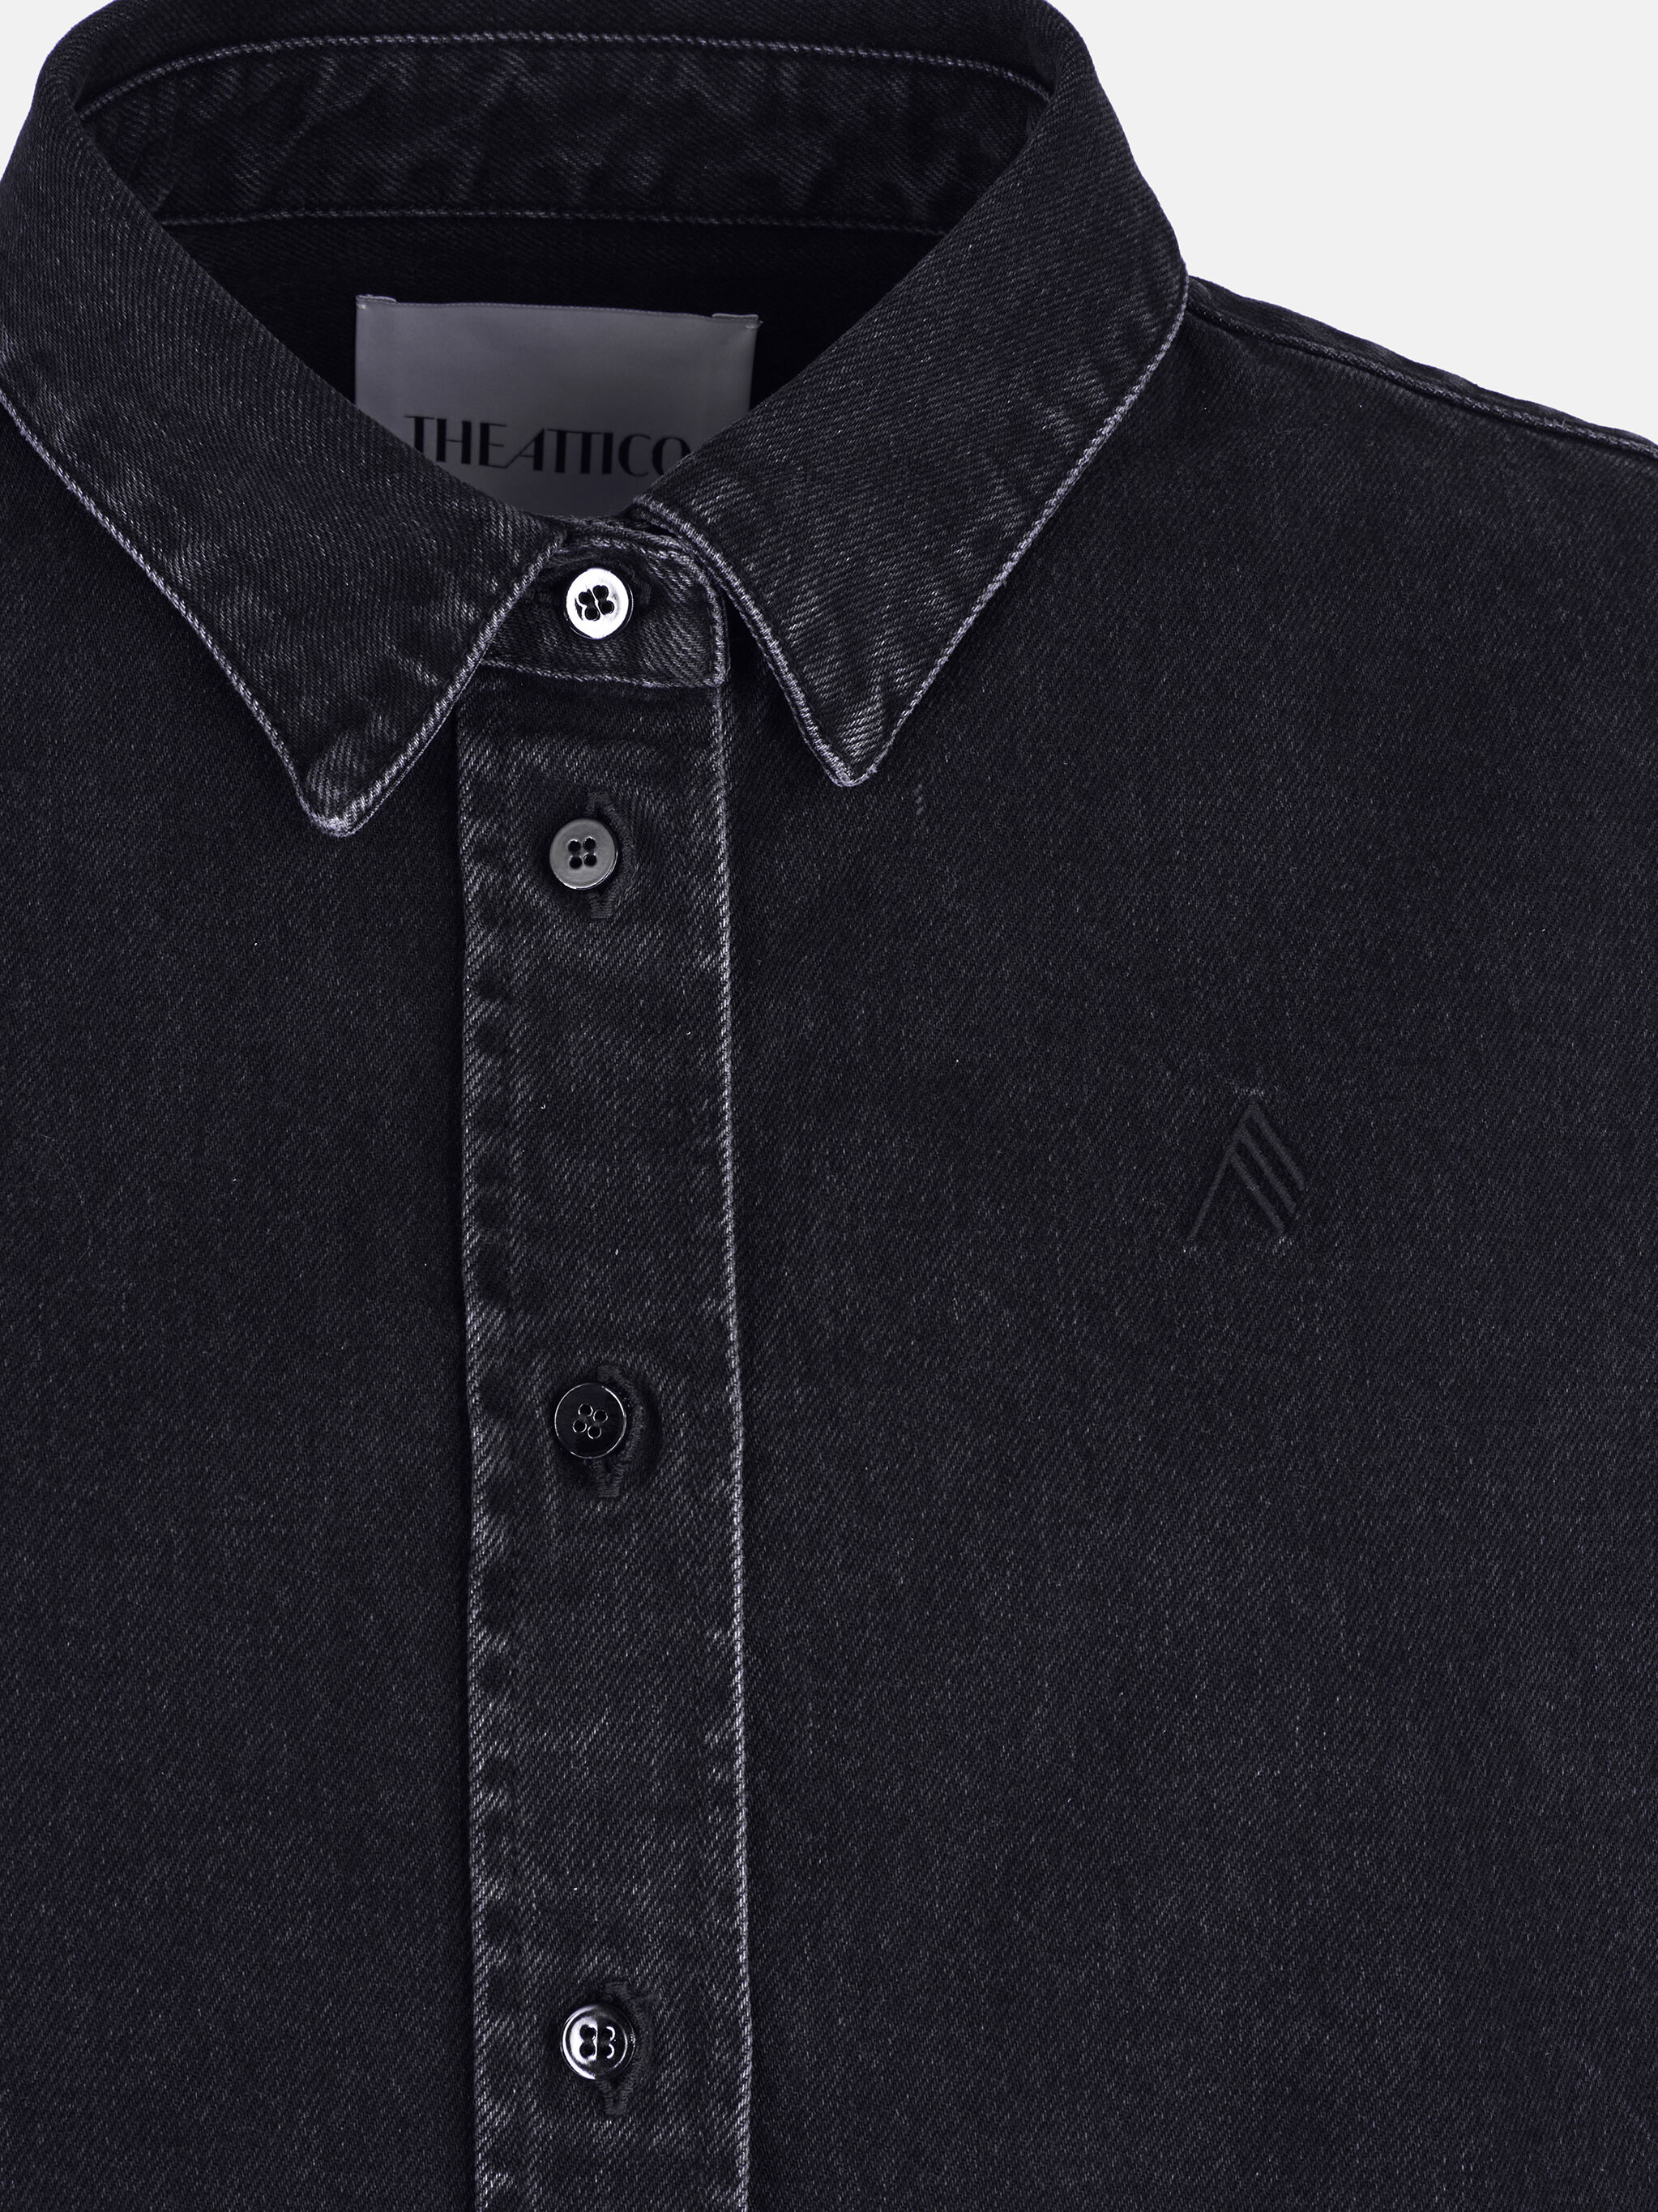 ''Diana'' black shirt for Women | THE ATTICO®